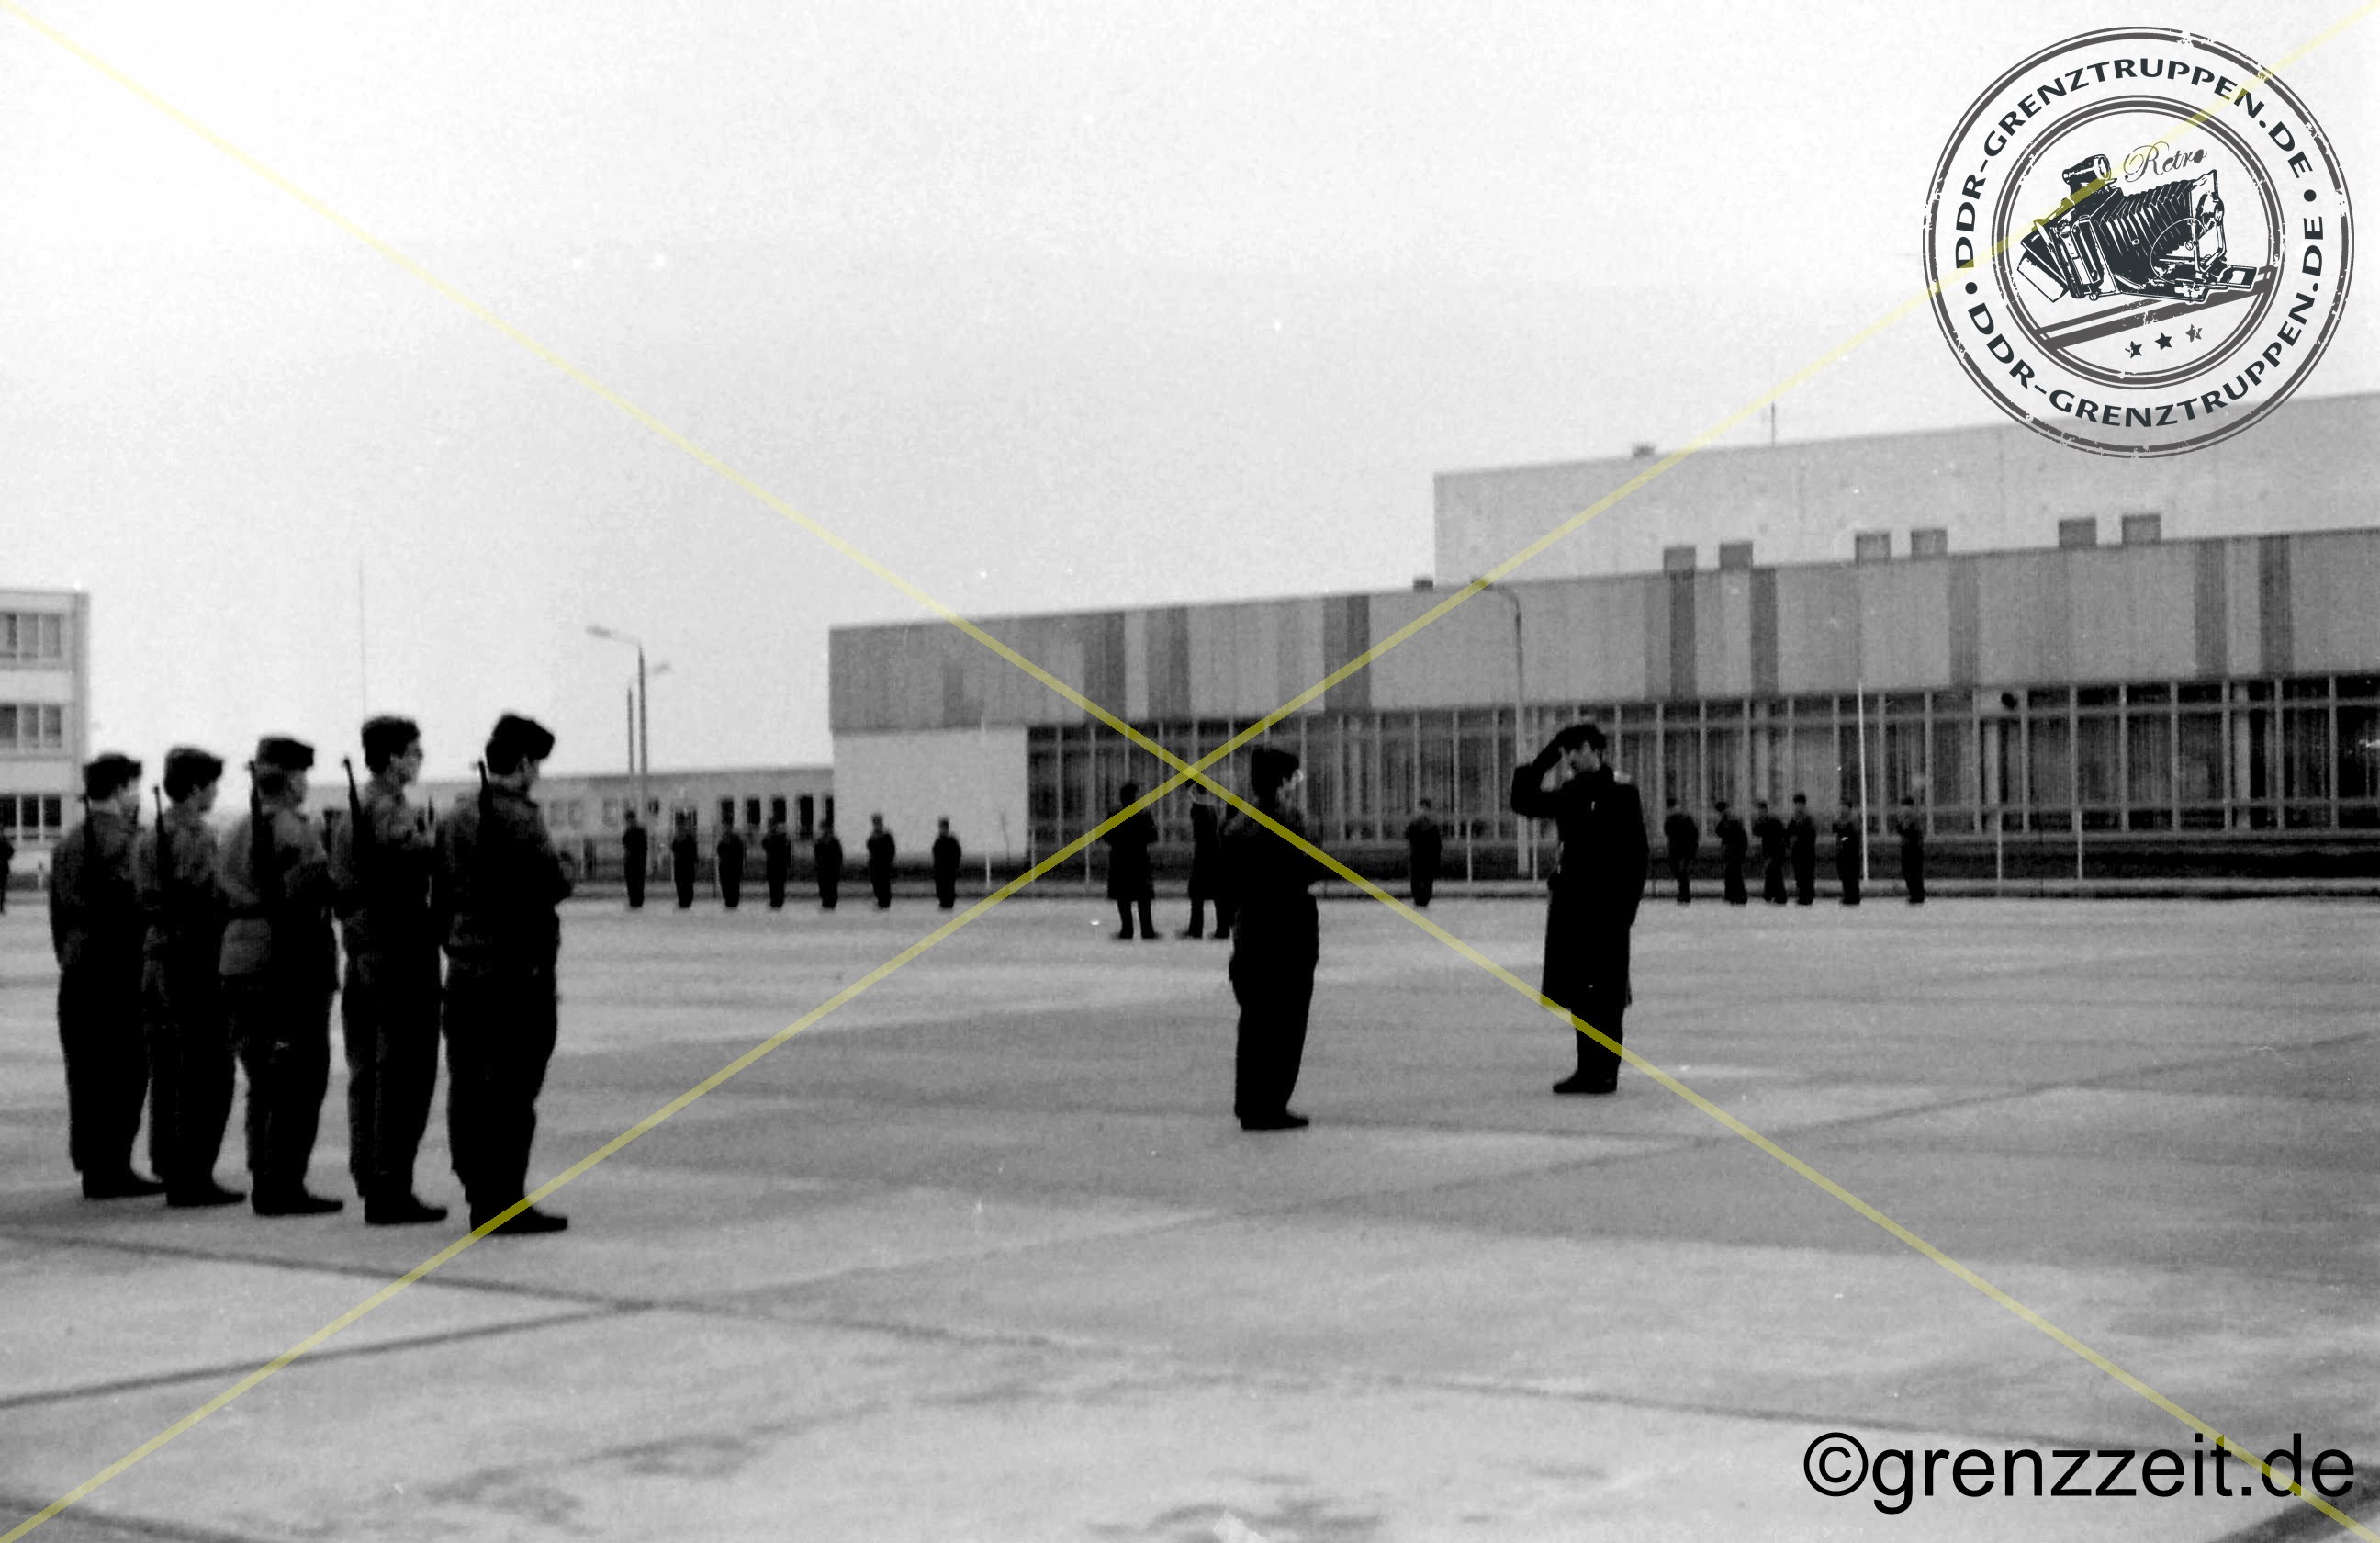 Ausbildung am Standort in der Fachrichtung Gruppenführer Grenzsicherung für die Grenztruppen der DDR.